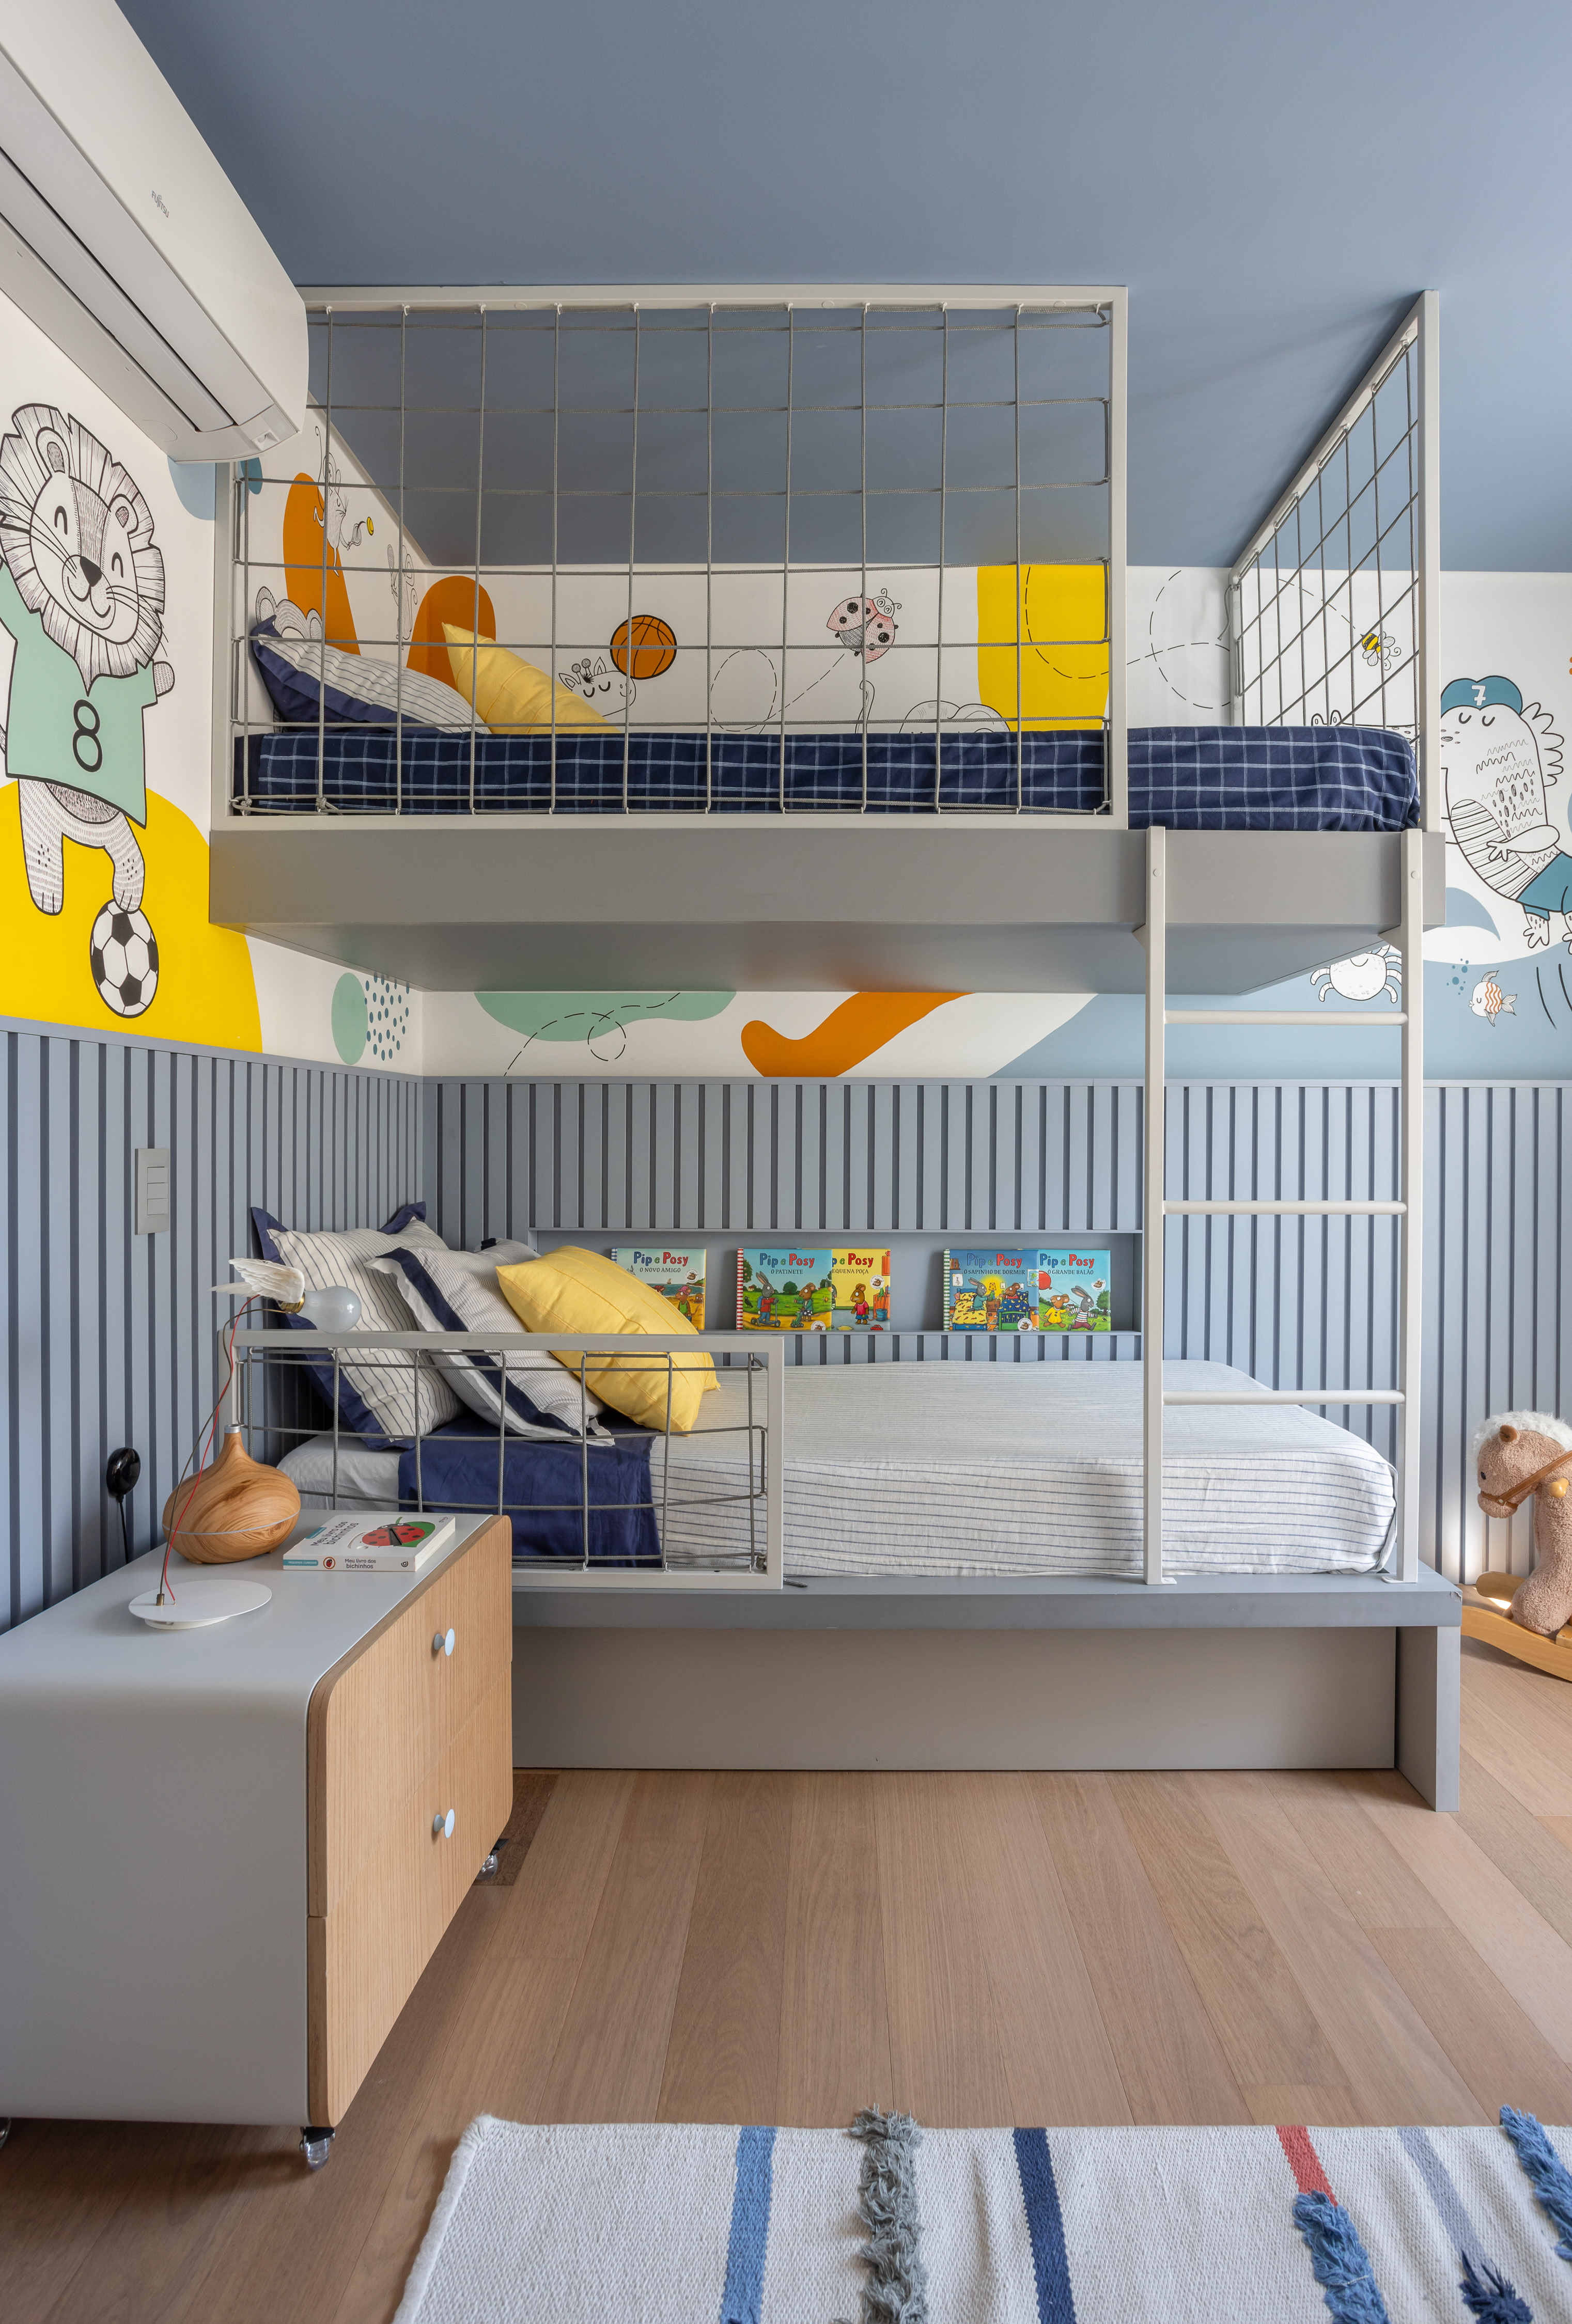 Laje de concreto, mesa em balanço e cozinha azul marcam apê de 115 m². Projeto do escritório Si Saccab. Na foto, quarto infantil com marcenaria azul.